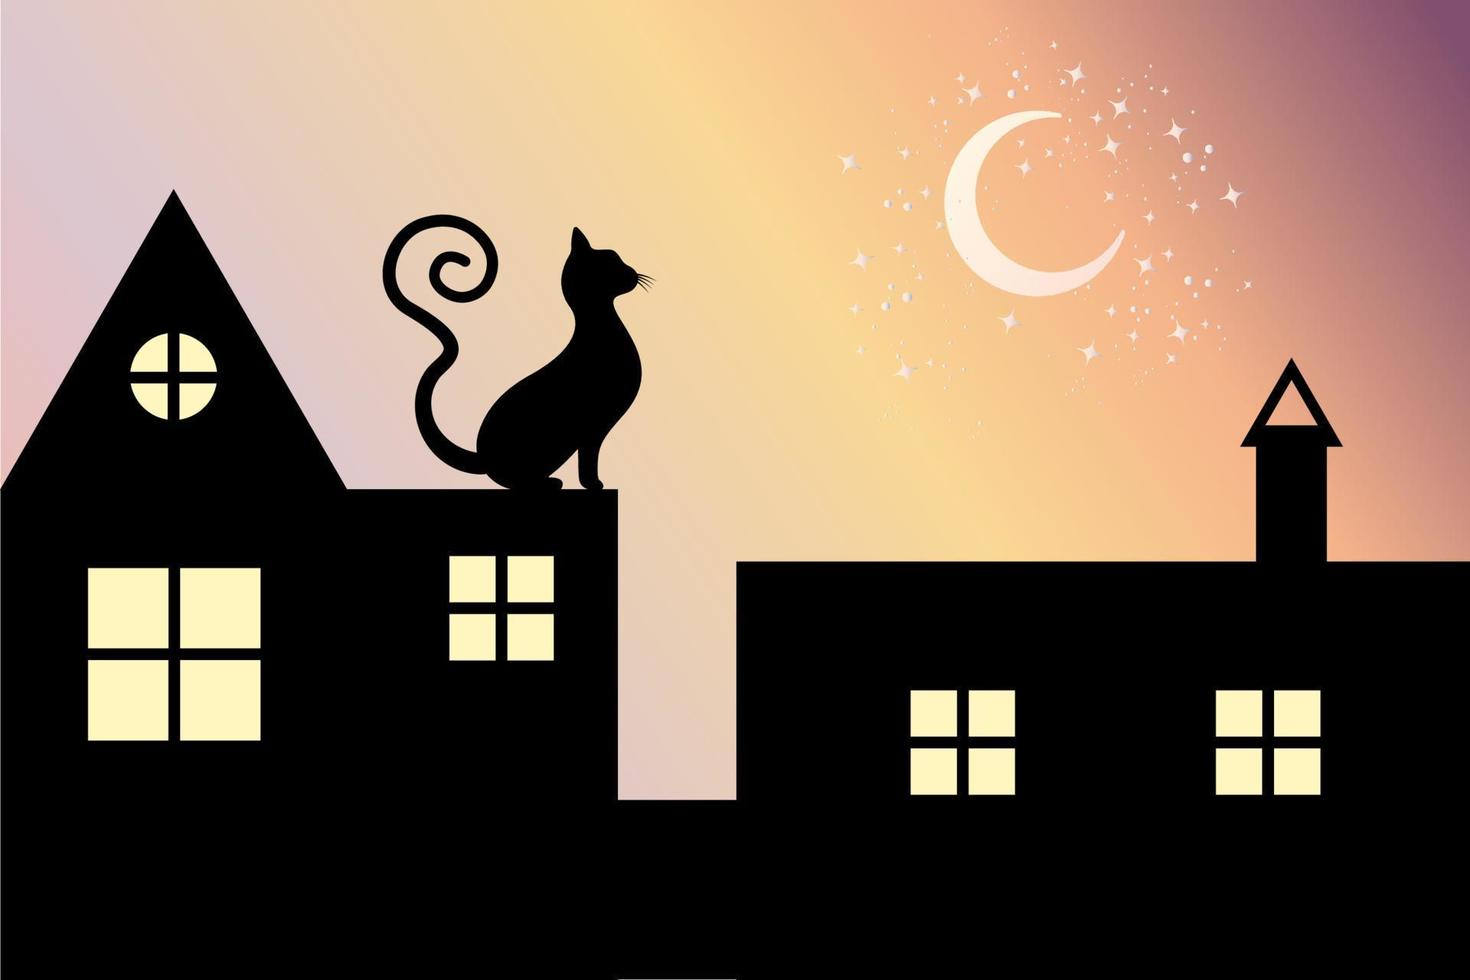 svart katt med lockig svans sitter på taket på natten tittar på månen och stjärnorna, vektorsiluett isolerad på solnedgångsgradientbakgrund vektor